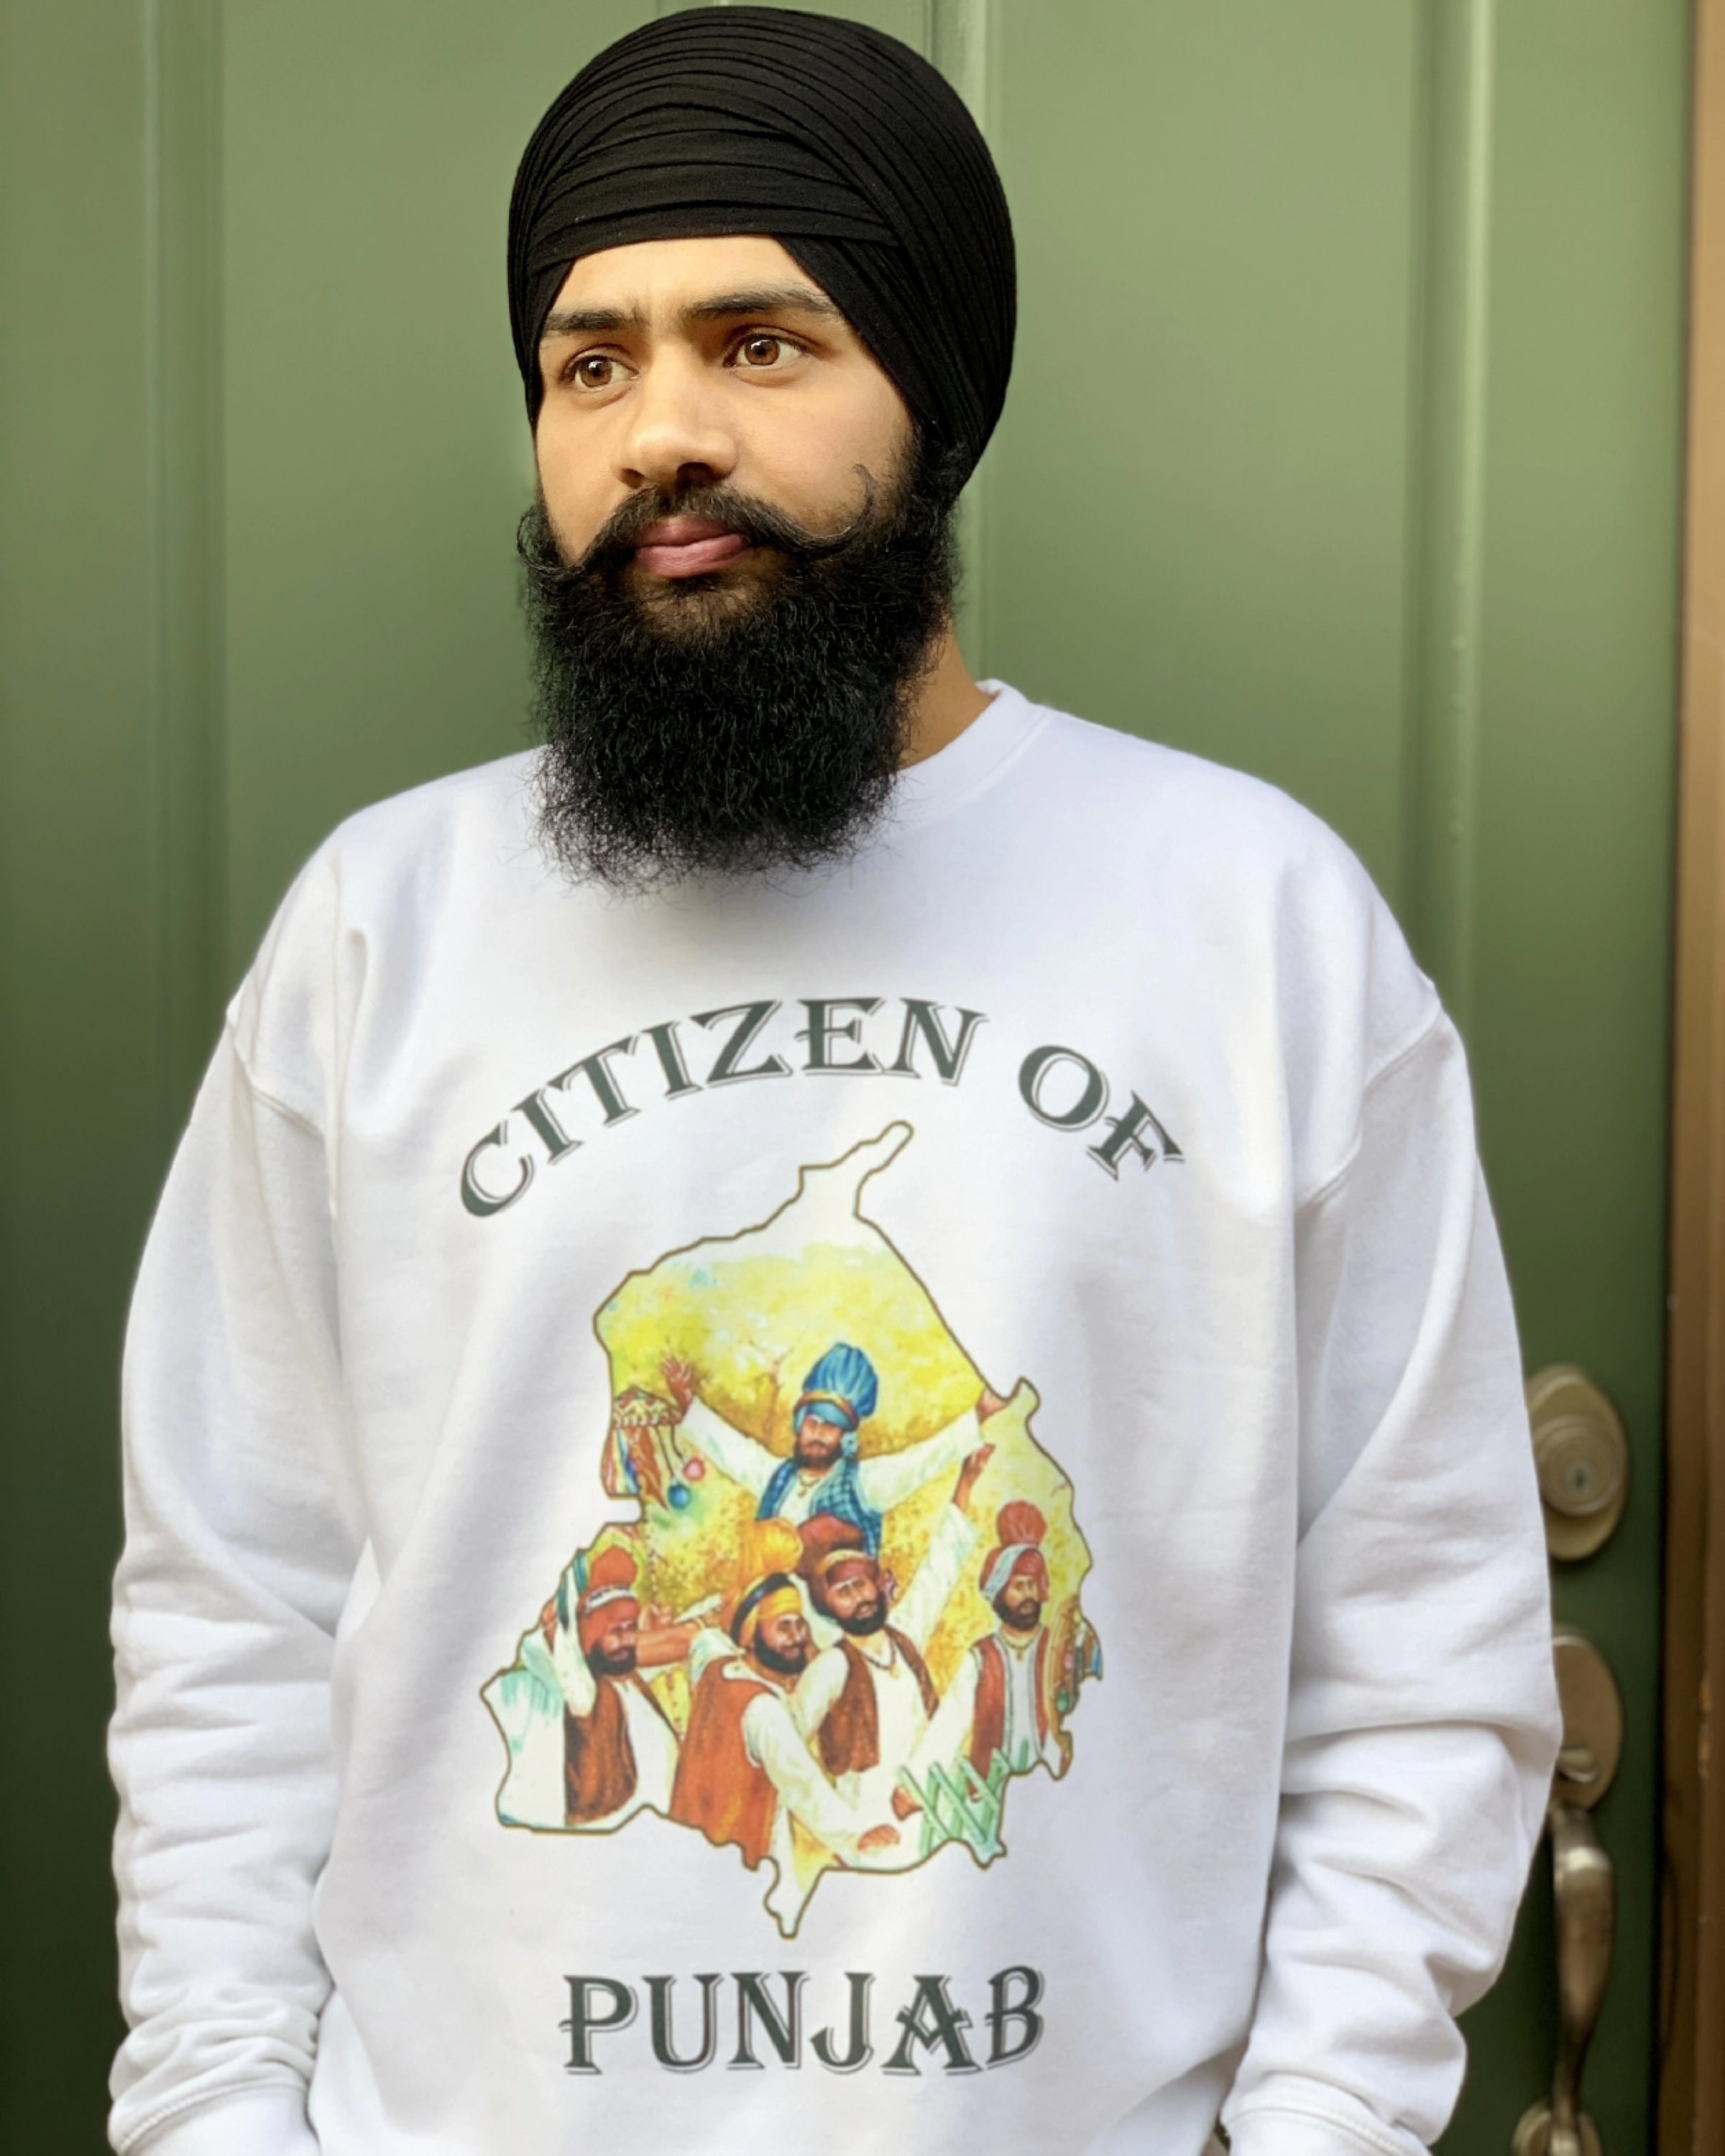 Citizen Of Punjab Hoodie/Sweatshirt